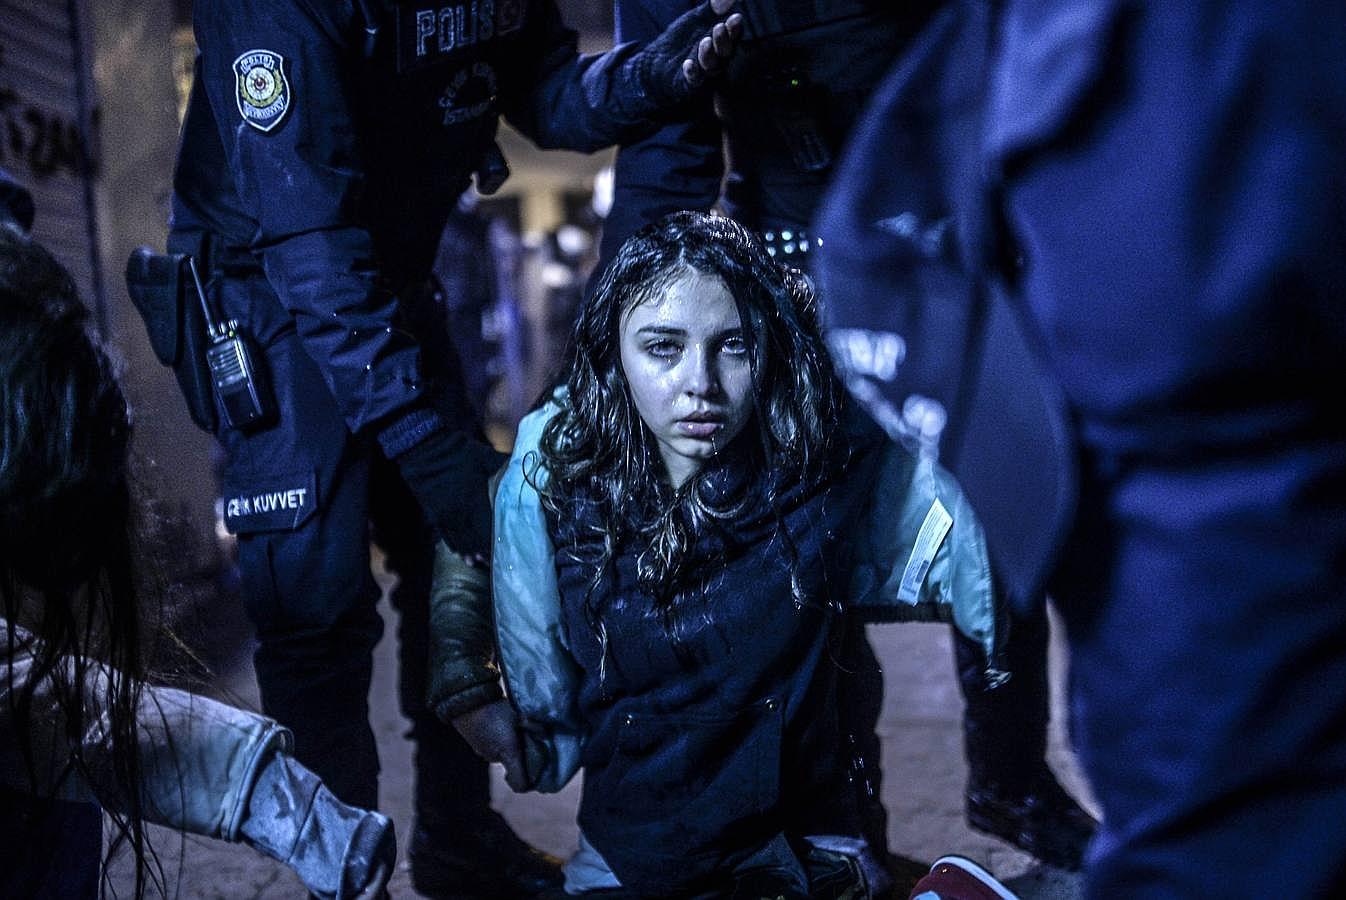 Bulent Kilic, fotógrafo turco de la agencia AFP, captó esta imagen de una joven herida en los choques con la Policía que siguieron al funeral del adolescente muerto en marzo tras enfrentarse a los agentes en Estambul.